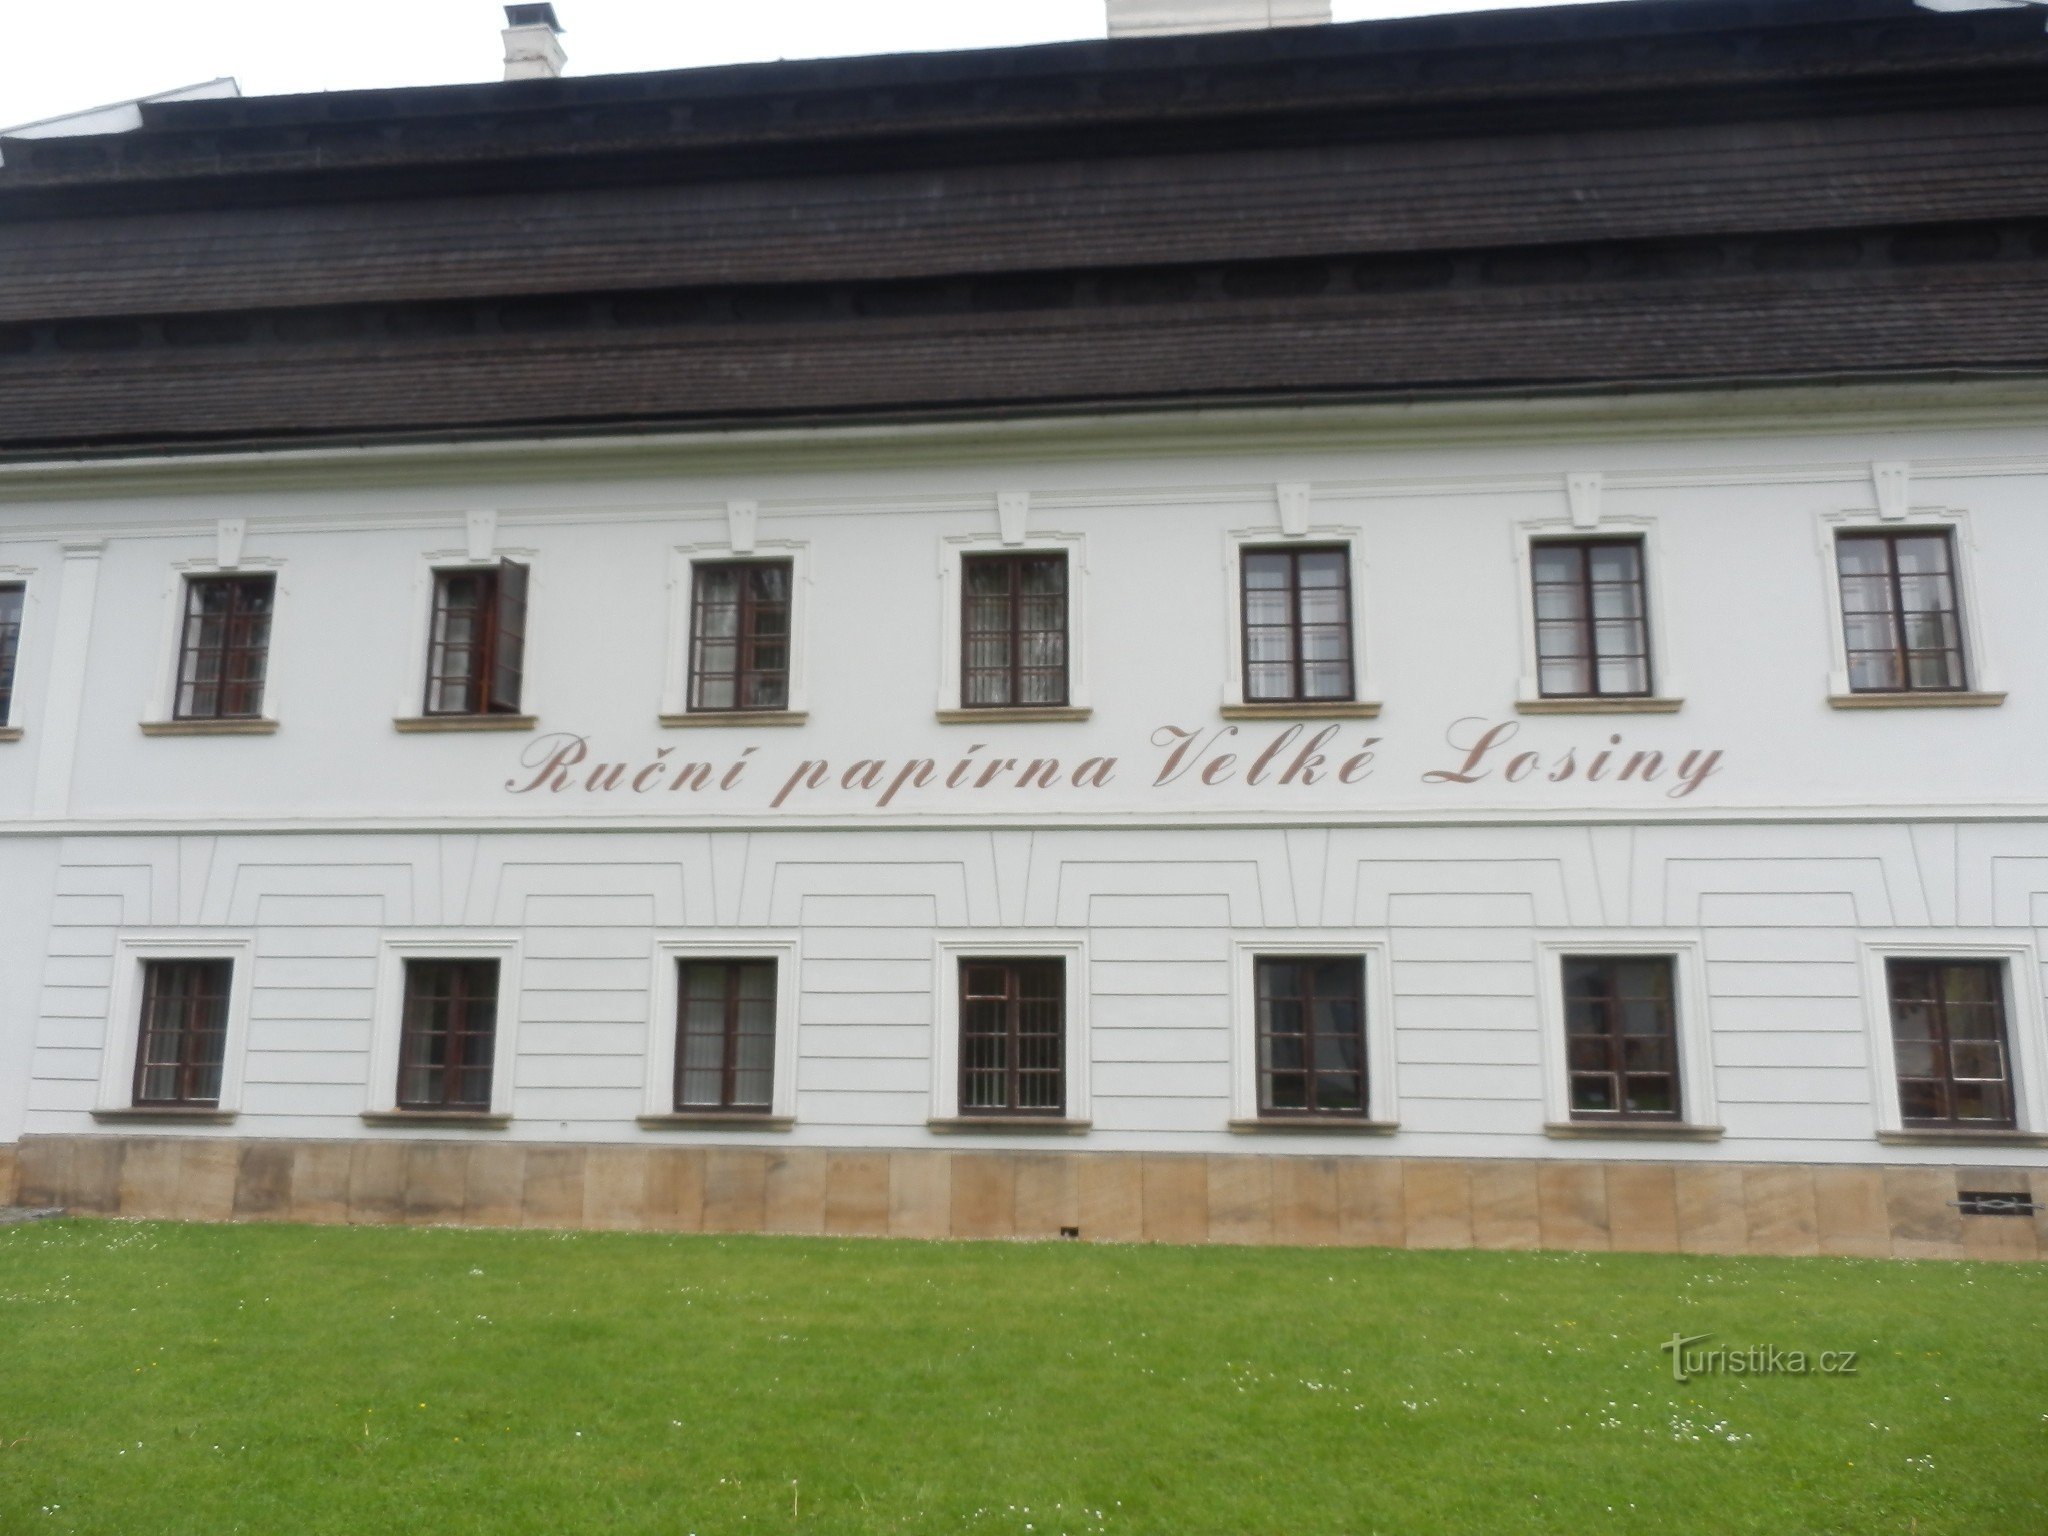 Bảo tàng giấy Velké Losiny